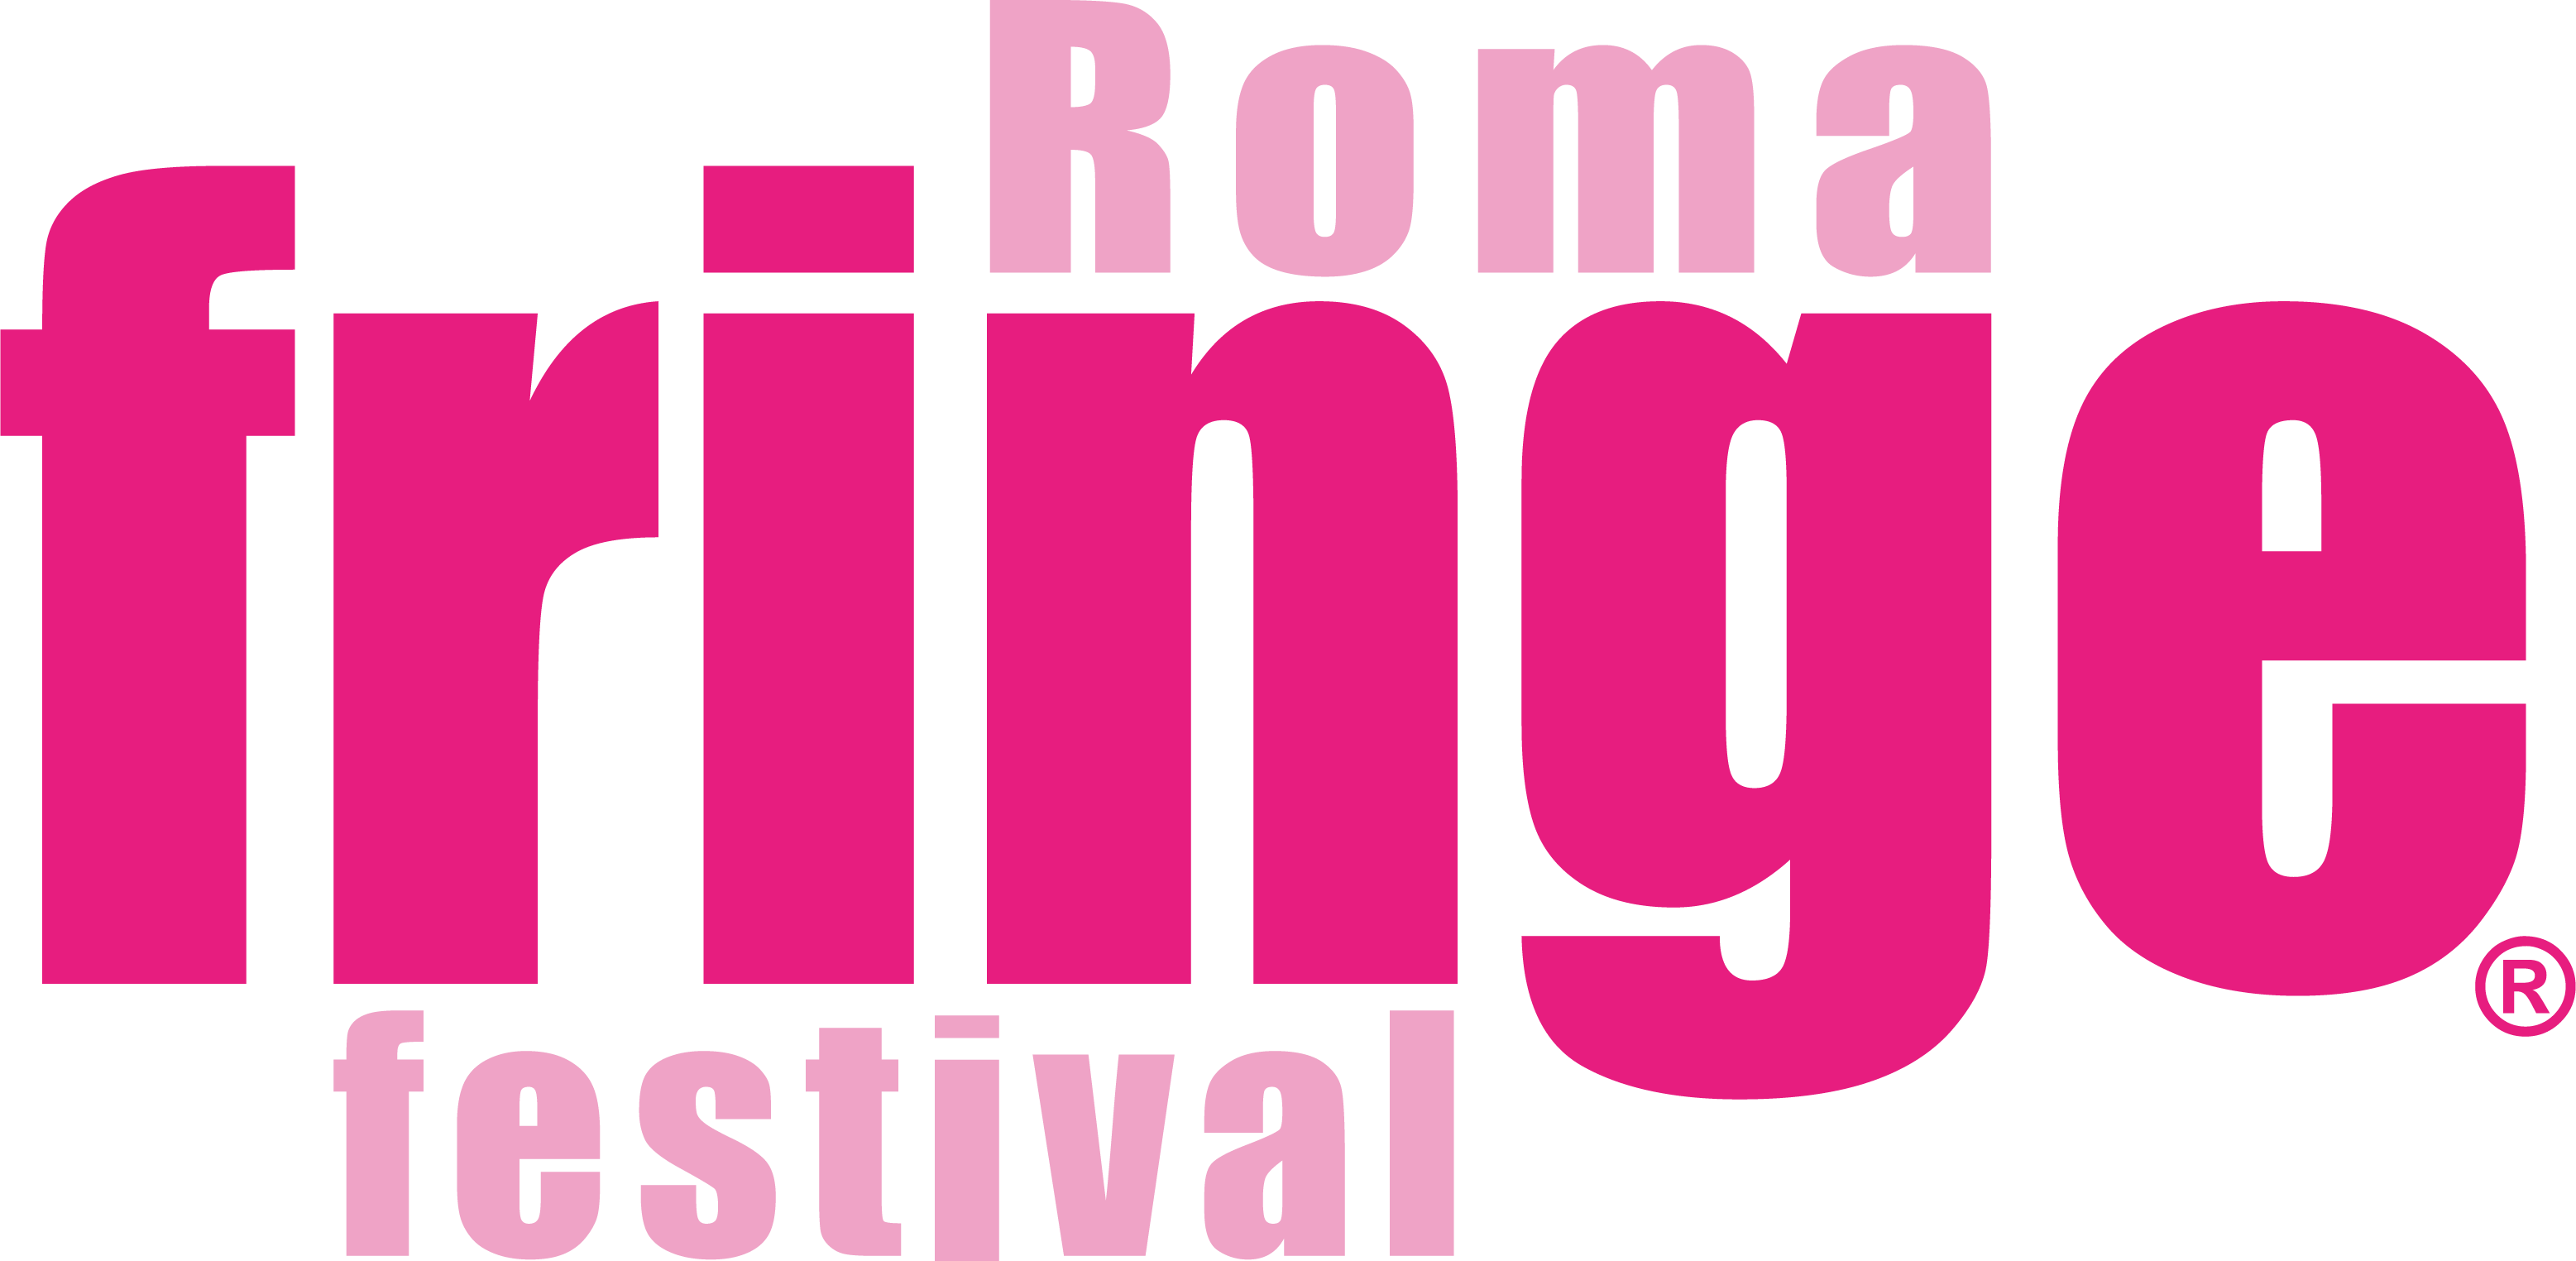 Roma Fringe Festival